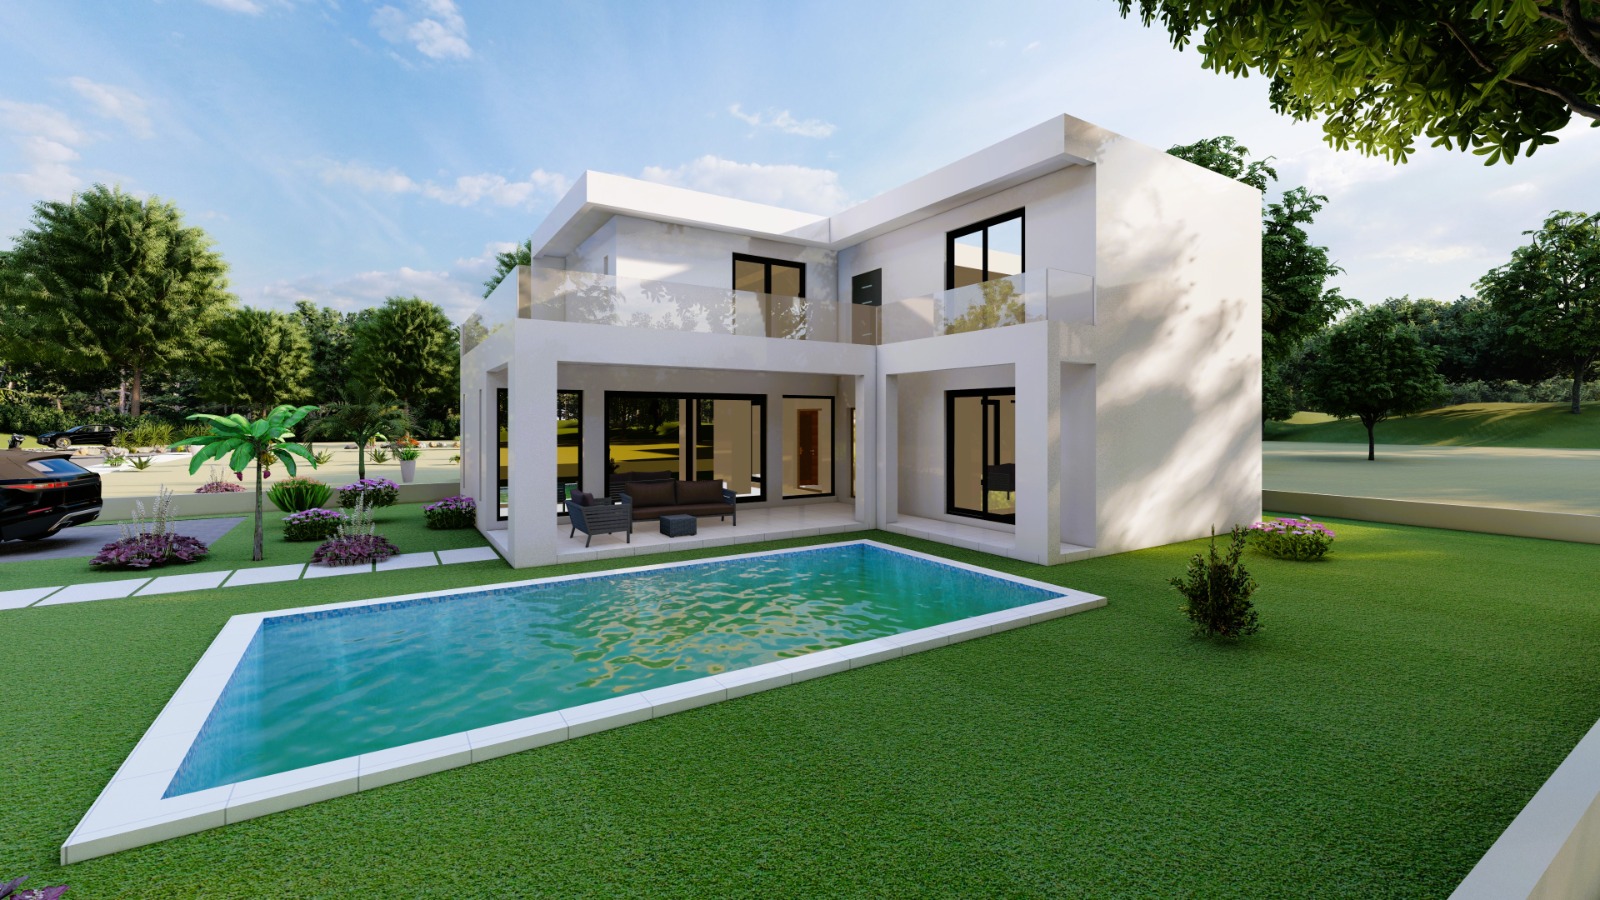 Villa avec piscine de 8x4 � construire sur terrain de 500m�